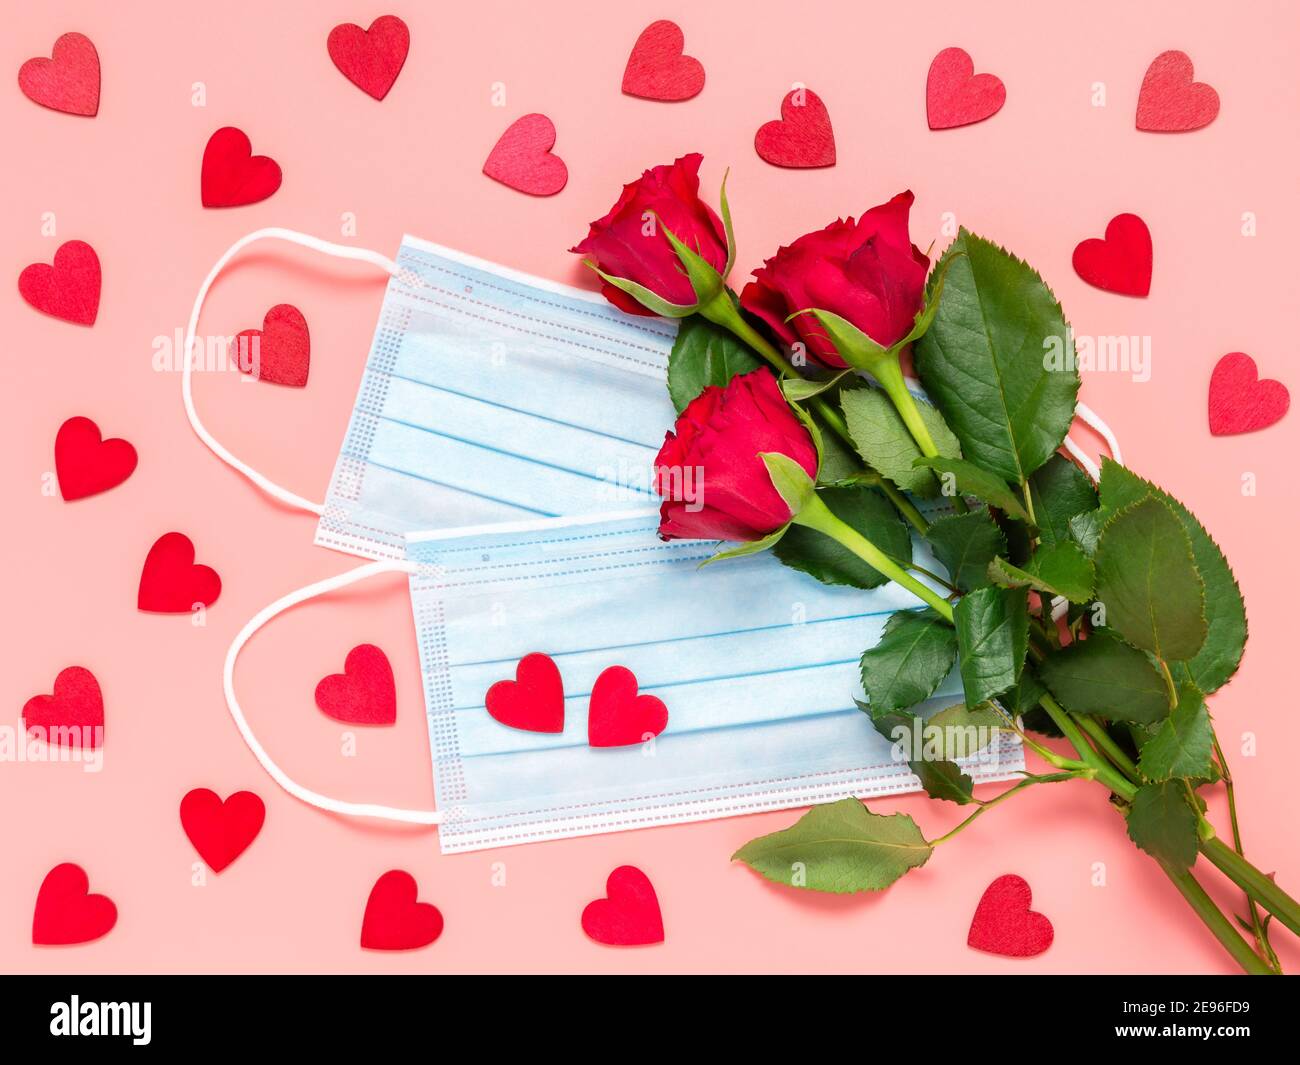 Rote Rosen und medizinische Einweg-Gesichtsmaske mit vielen roten Herzen  auf rosa Hintergrund. Mütter, Frauen oder Valentinstag Feier in Coronavirus  pande Stockfotografie - Alamy